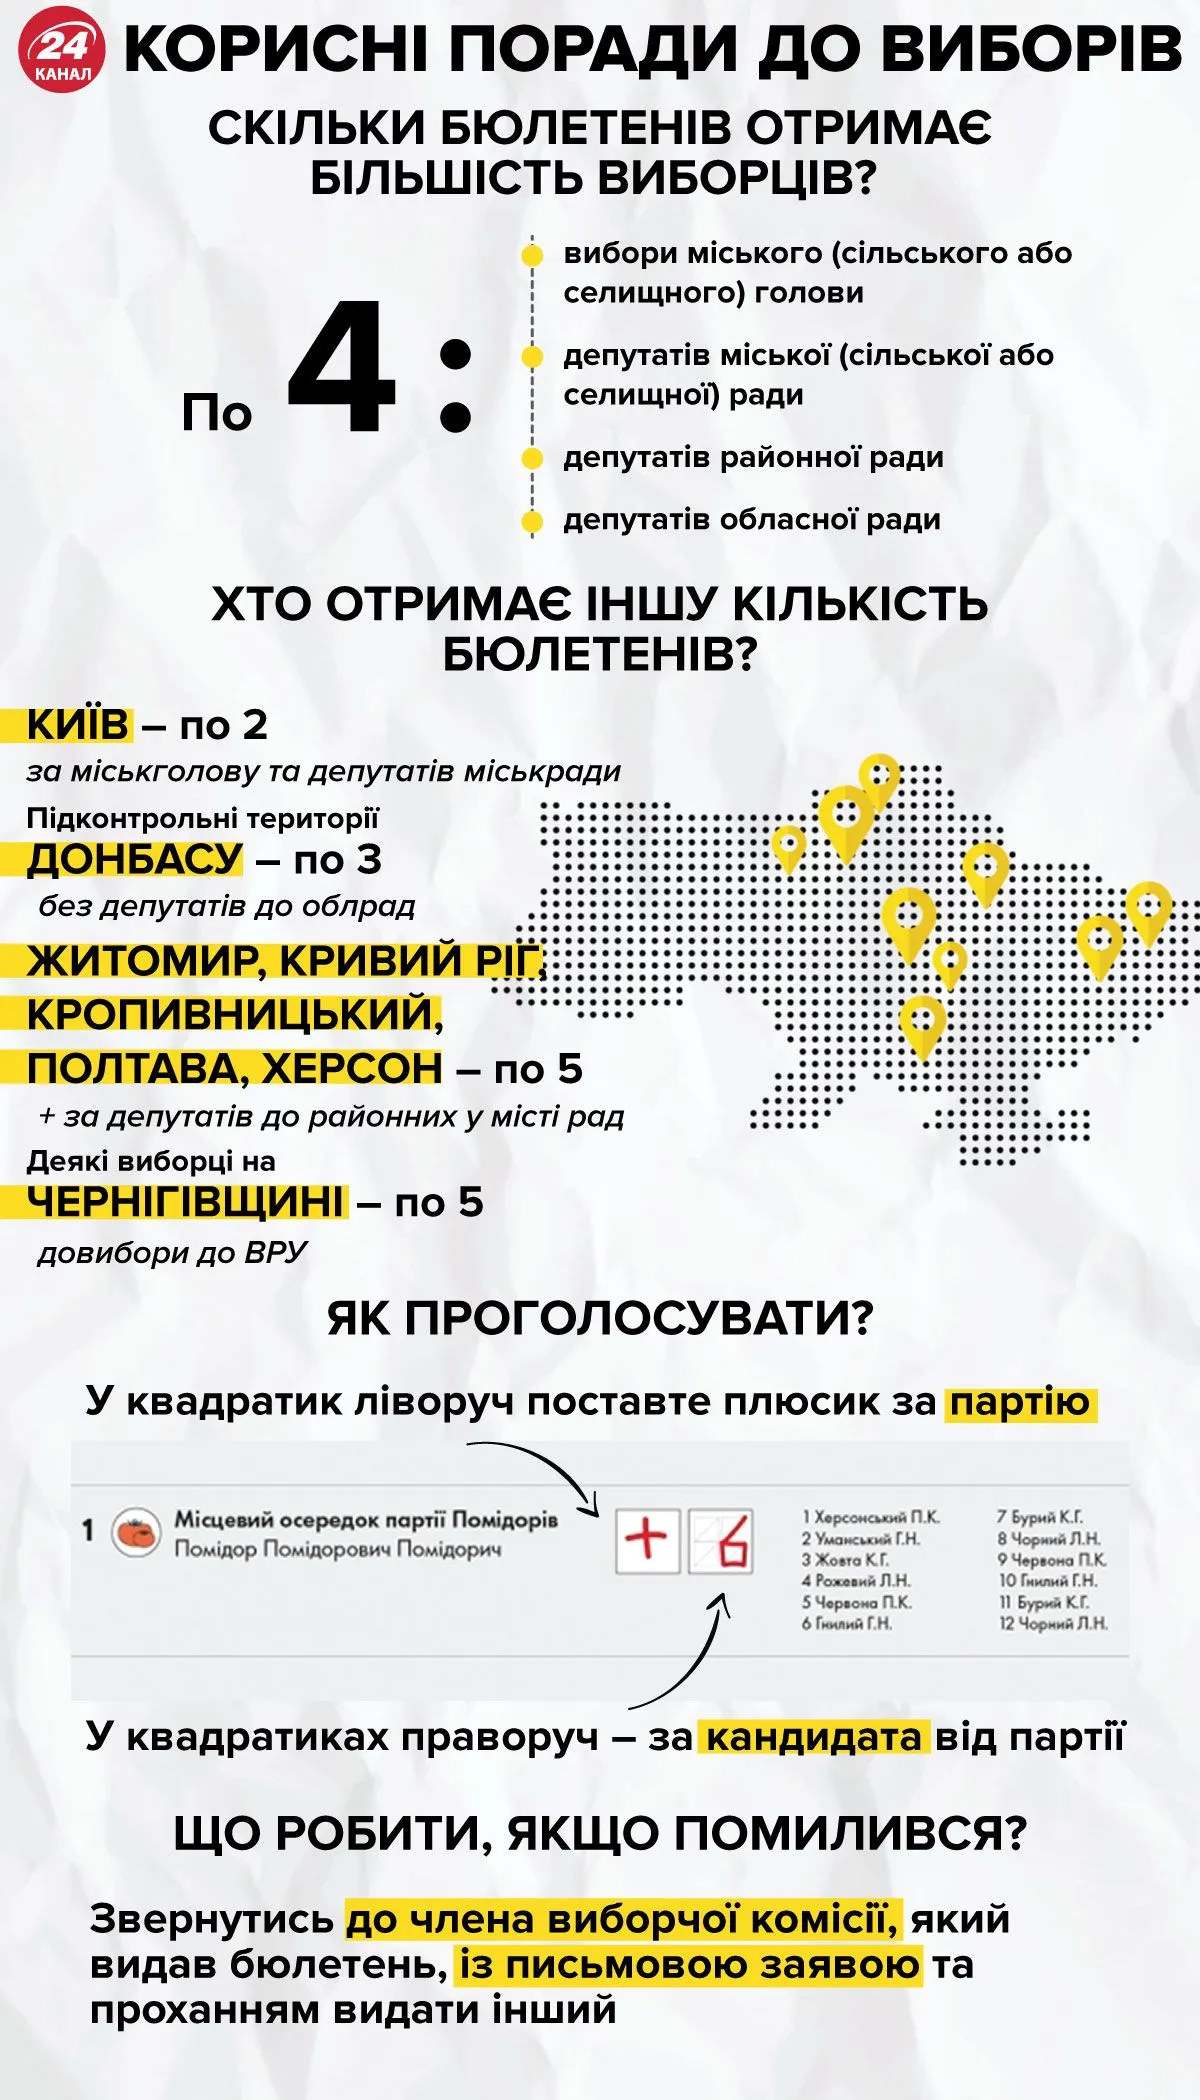 Кількість бюлетенів у виборця / Інфографіка 24 каналу